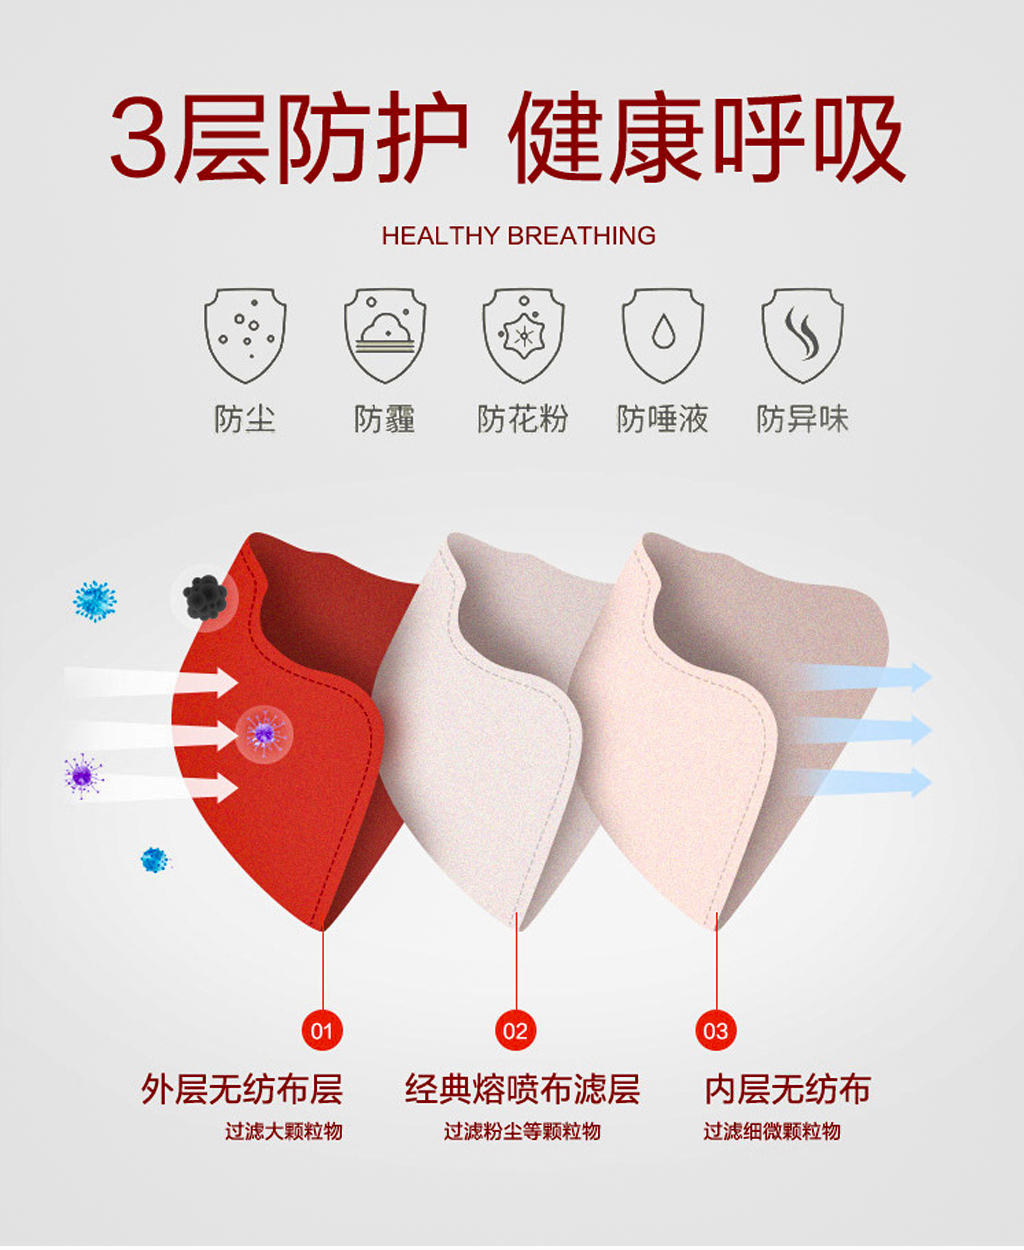 中国红纪念款定制口罩,三层防护,外层无纺布可过滤大颗粒物,中层熔喷布可过滤粉尘等细小颗粒物